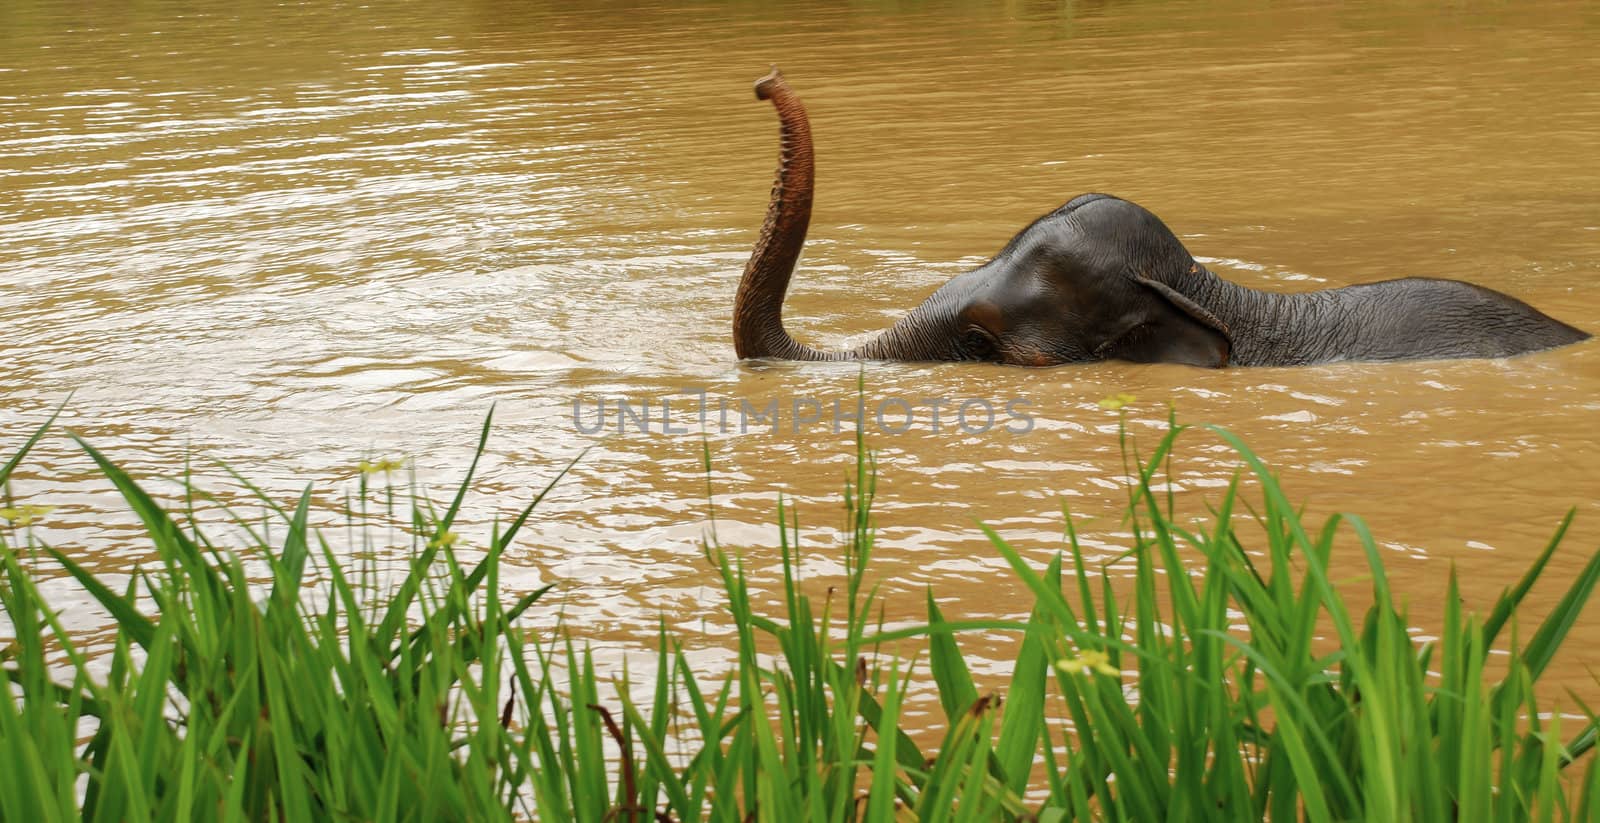 elephant bath in Thailand